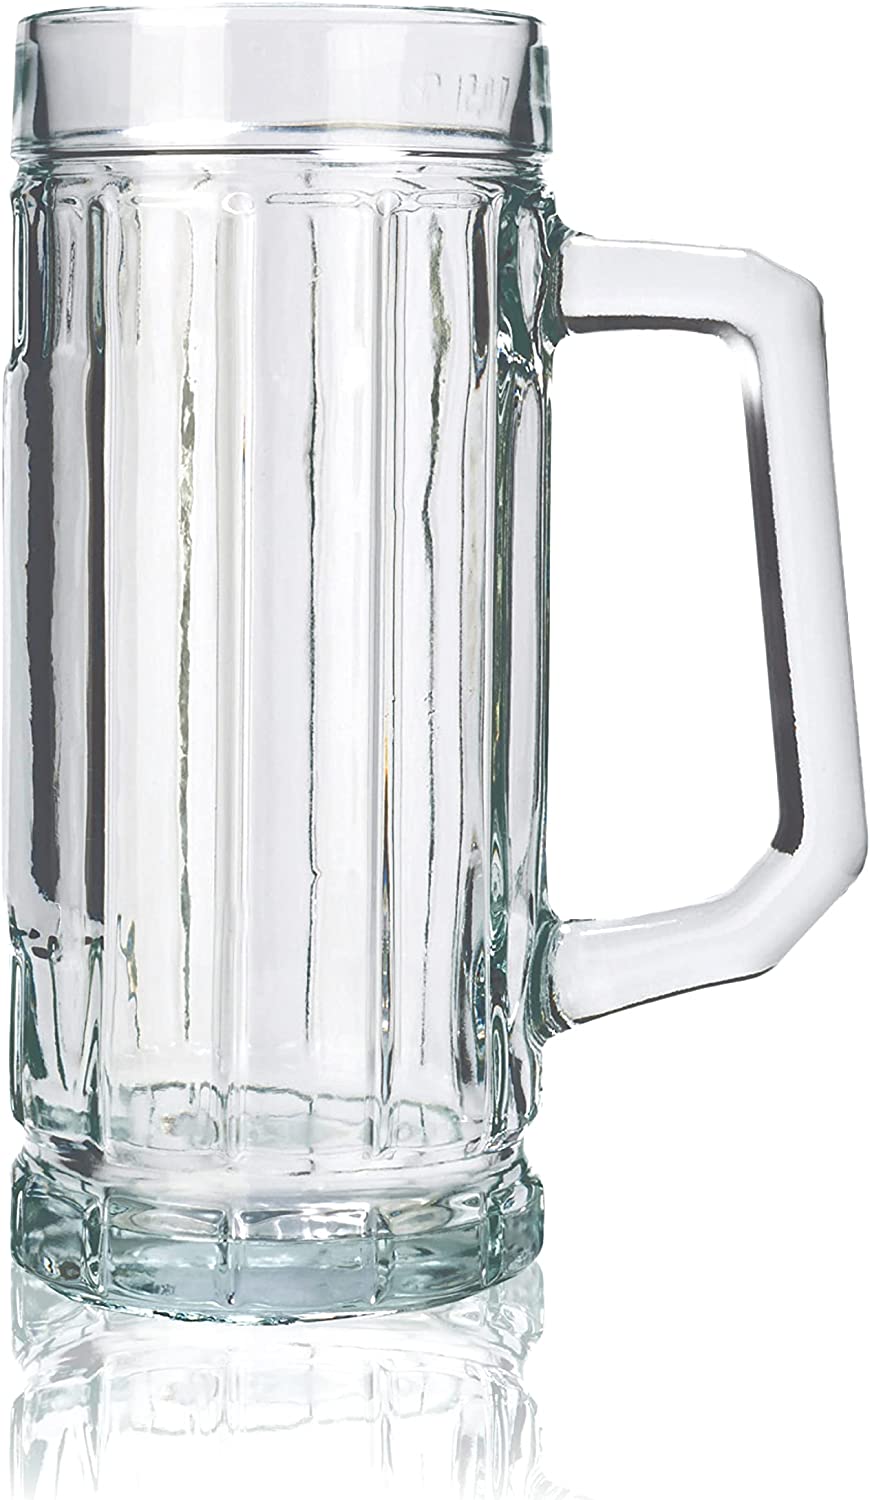 Stölzle Oberglas Gambrinus Beer Mugs / Set of 6 / 0.3 Litres / Sturdy Beer Jug / Beer Glasses 0.3 Litres Made of Soda Lime Glass / Beer Mugs 0.3 L Dishwasher Safe